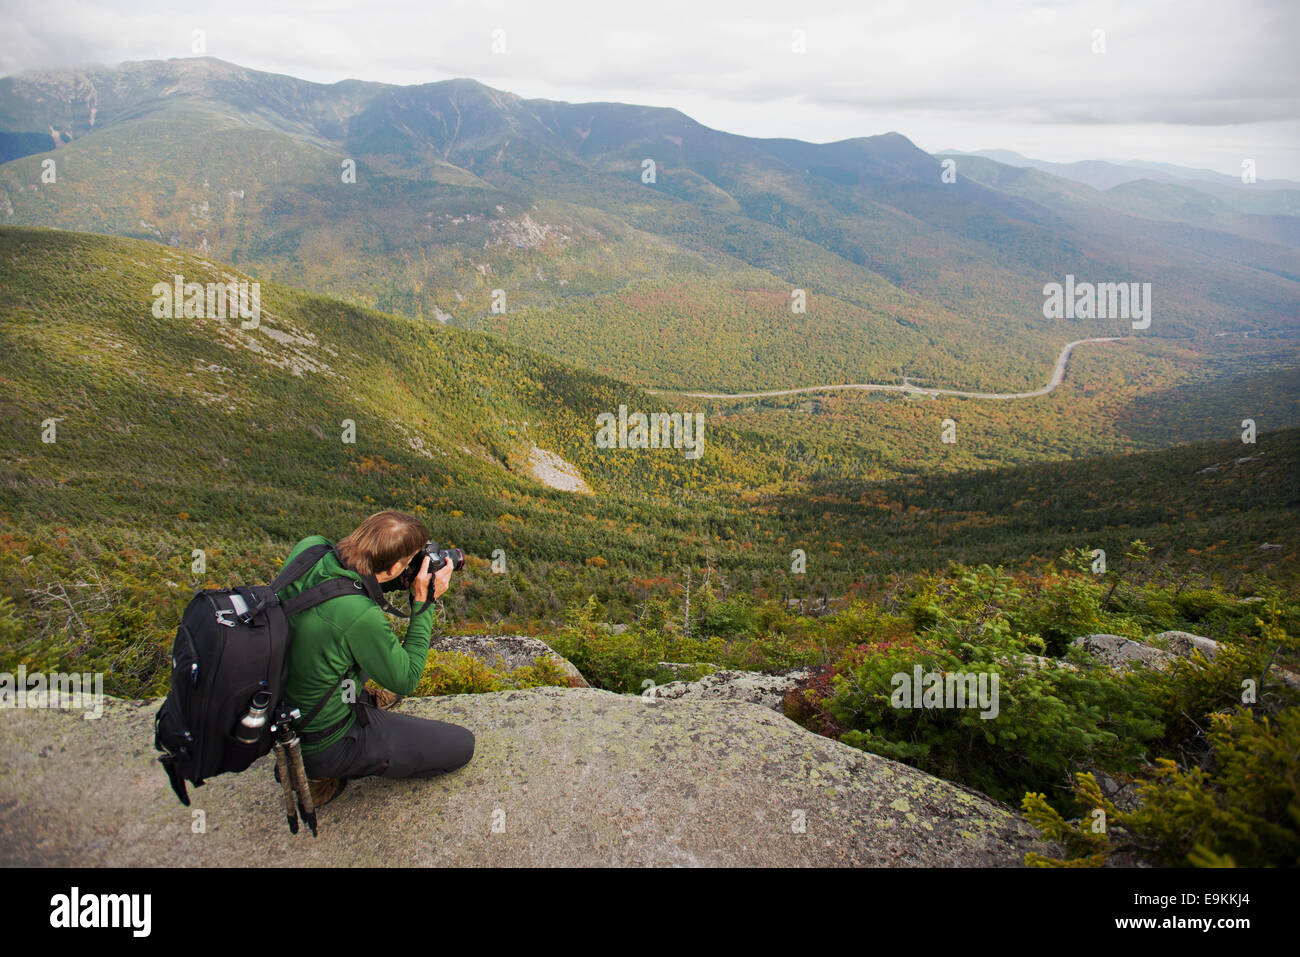 Fotografo Tim Laman presso Scenic vista dal monte cannone, White Mountain National Forest, New Hampshire USA Foto Stock